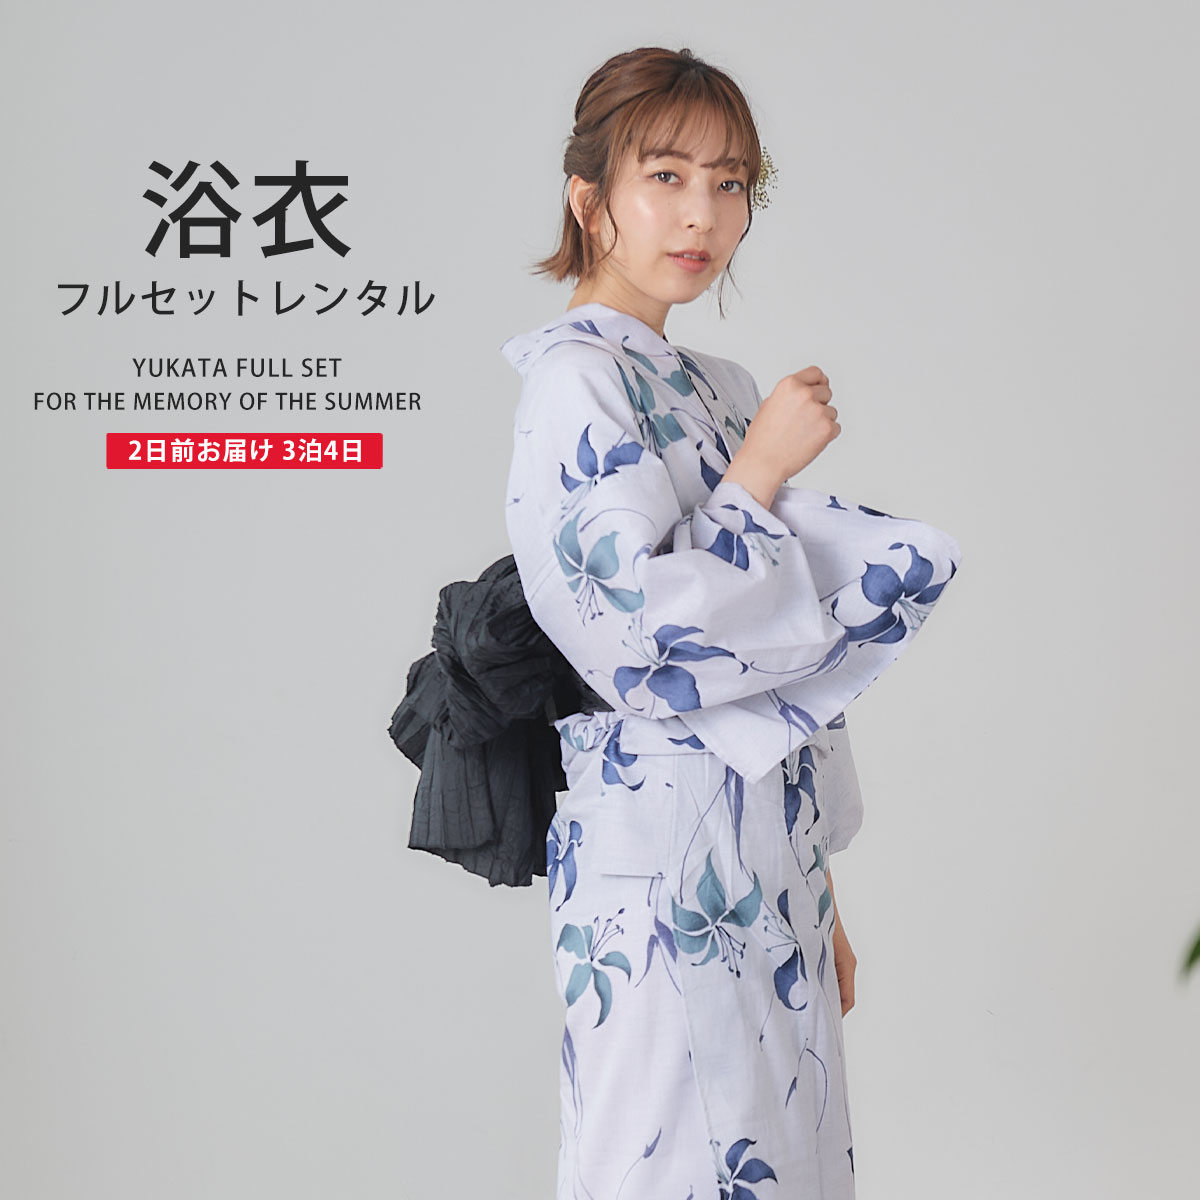 日本正規浴衣セット 完全フルセット 着物 和装 浴衣